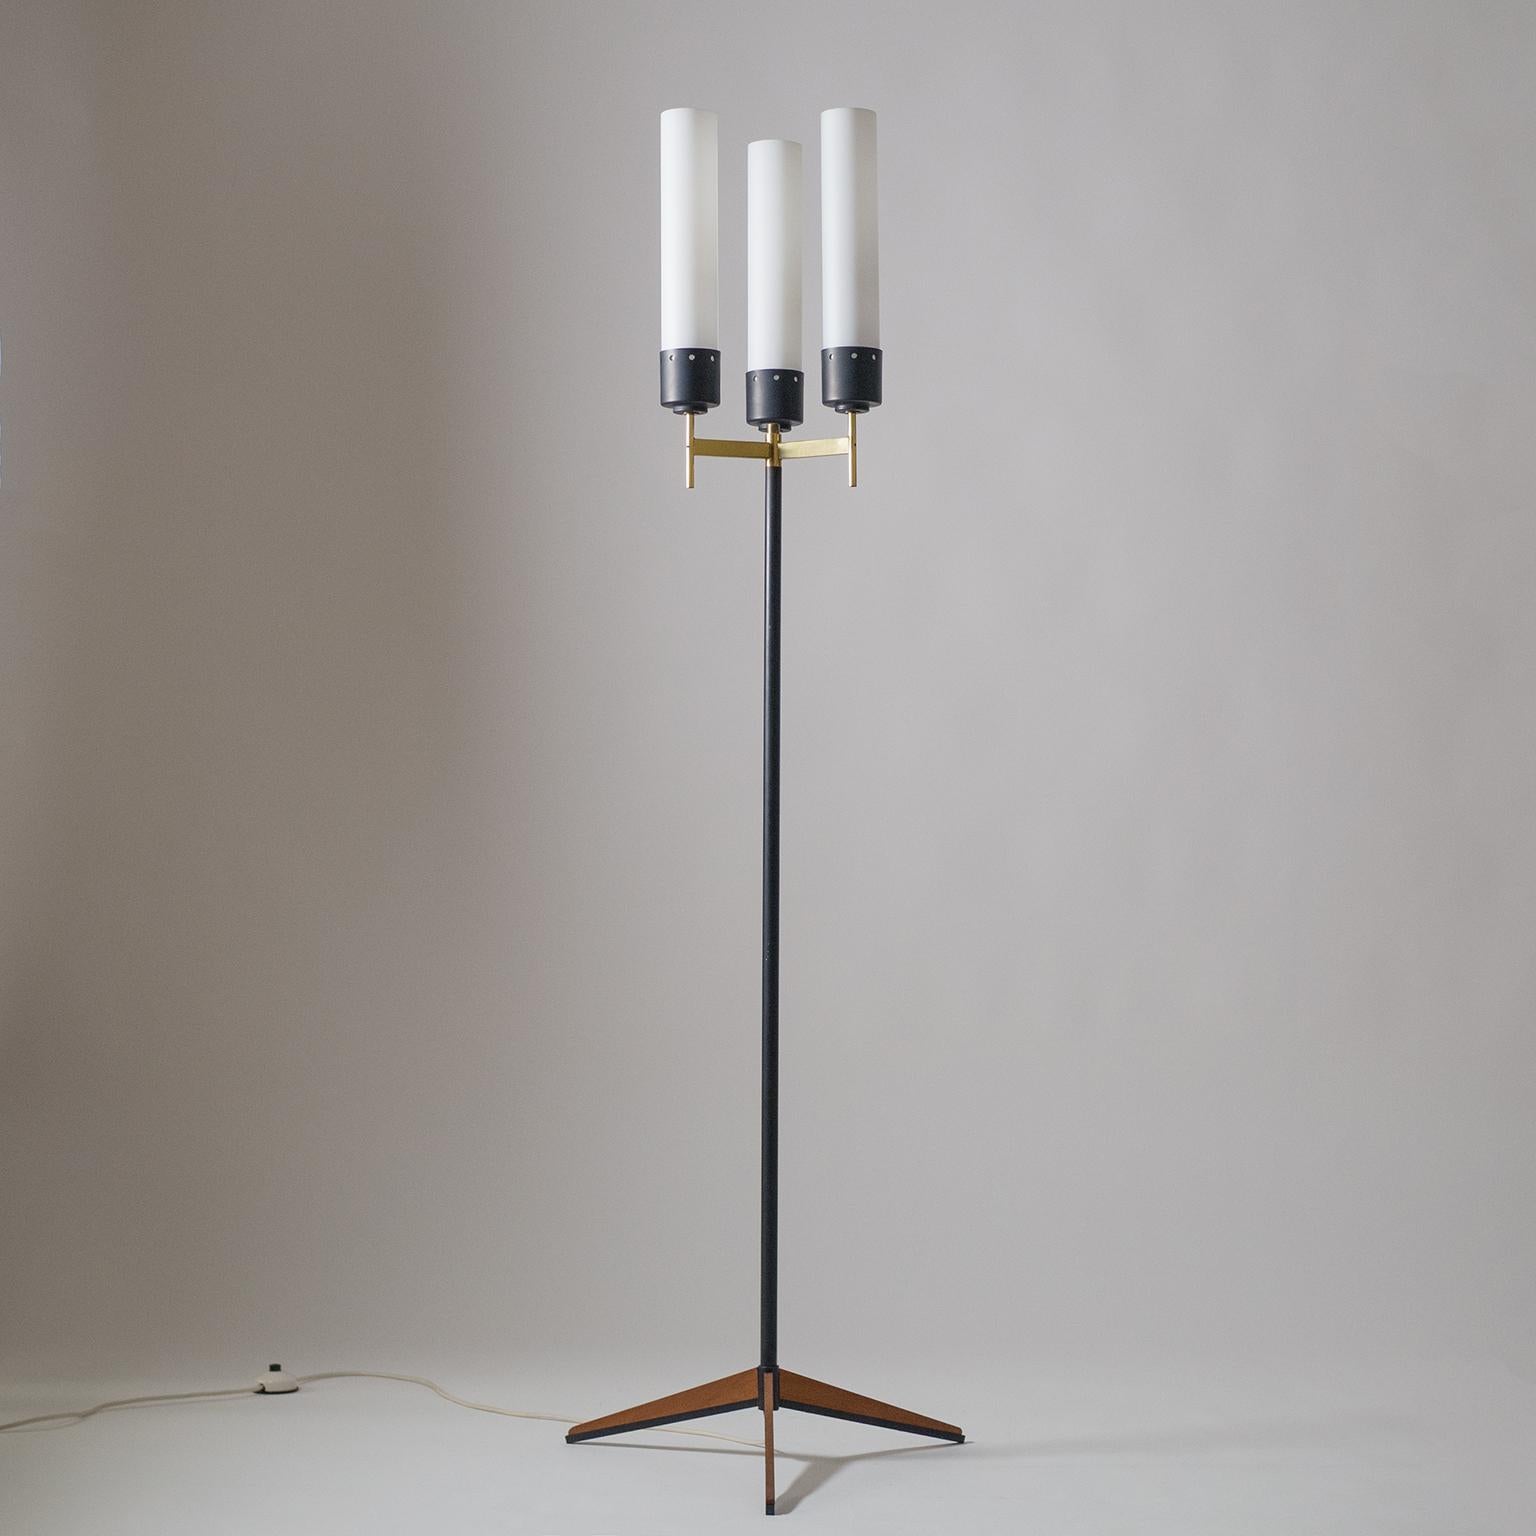 Elégant lampadaire moderniste Stilnovo avec une rare base tripode en teck. Un motif classique de lampadaire candélabre réinterprété comme une sculpture moderne graphique et minimaliste : Base tripode en teck, tige élancée, pièce centrale en laiton,